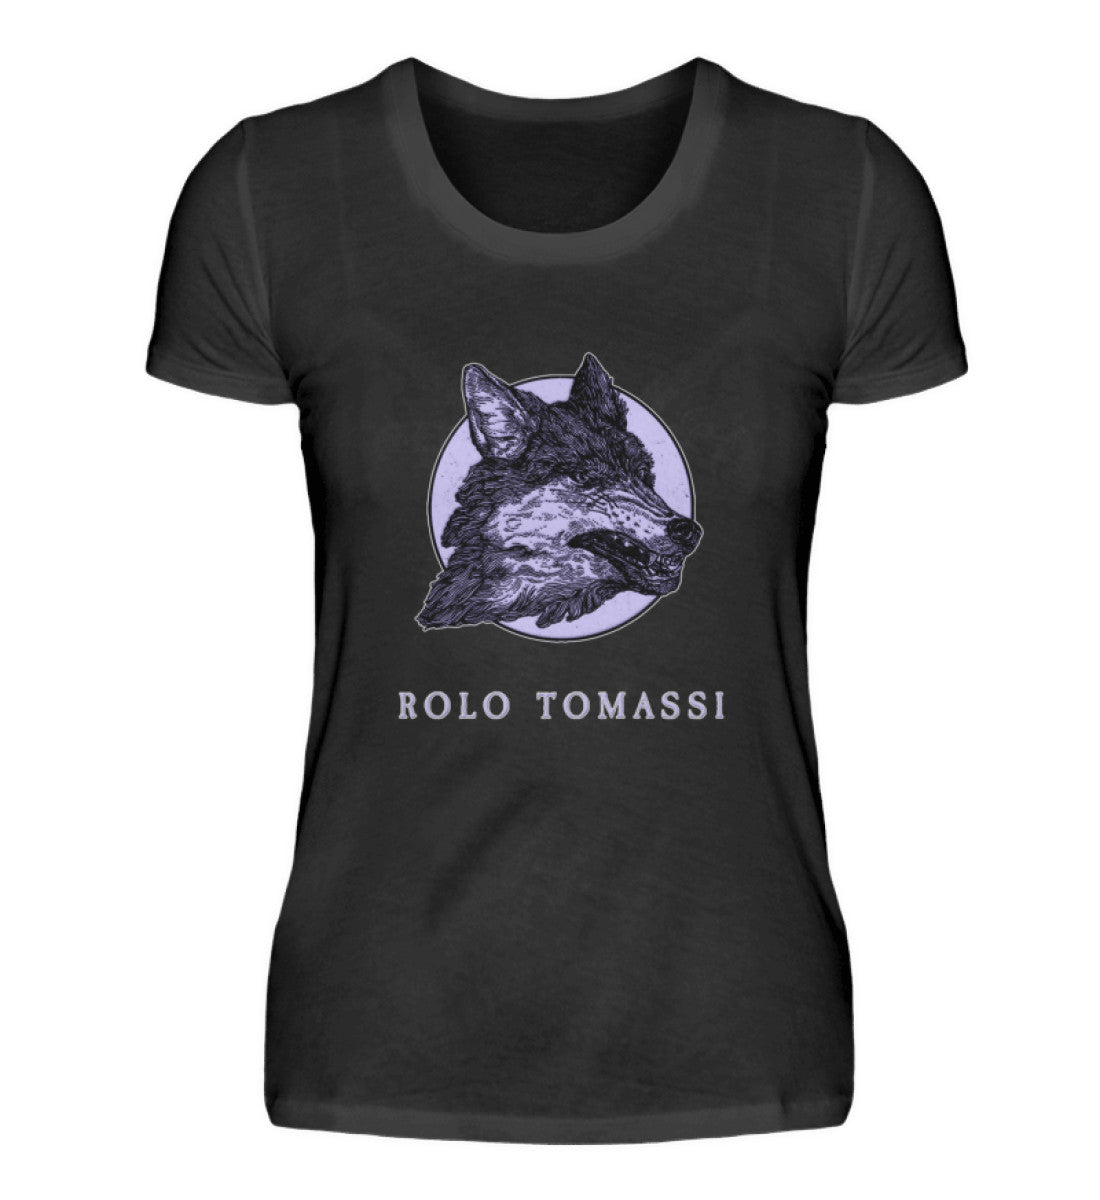 Rolo Tomassi T-Shirt Women